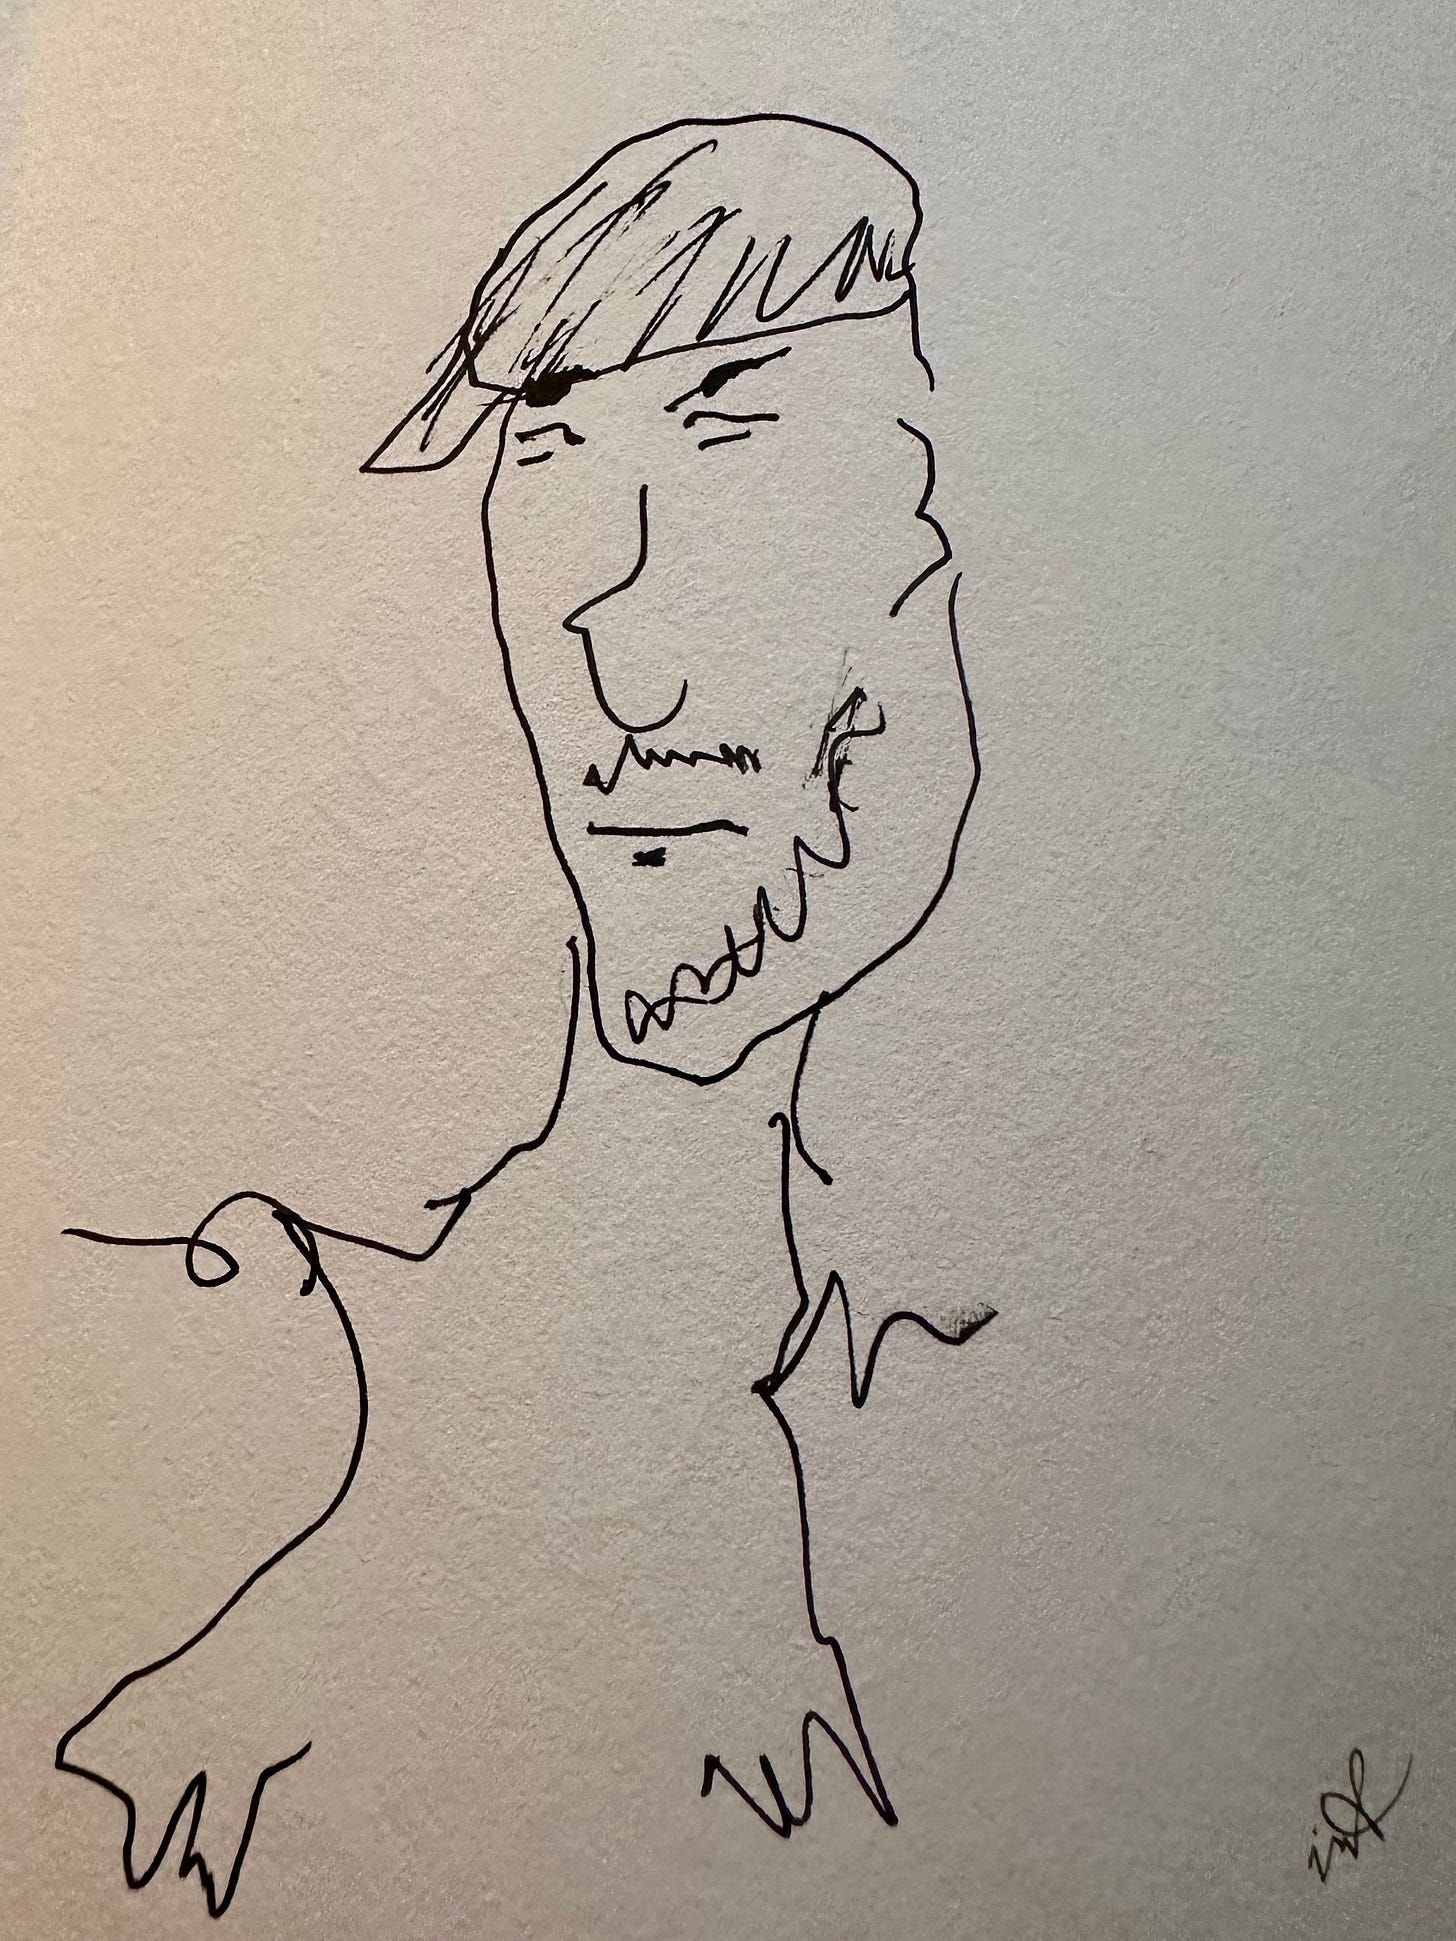 Doodle self-portrait of Mark Tulin